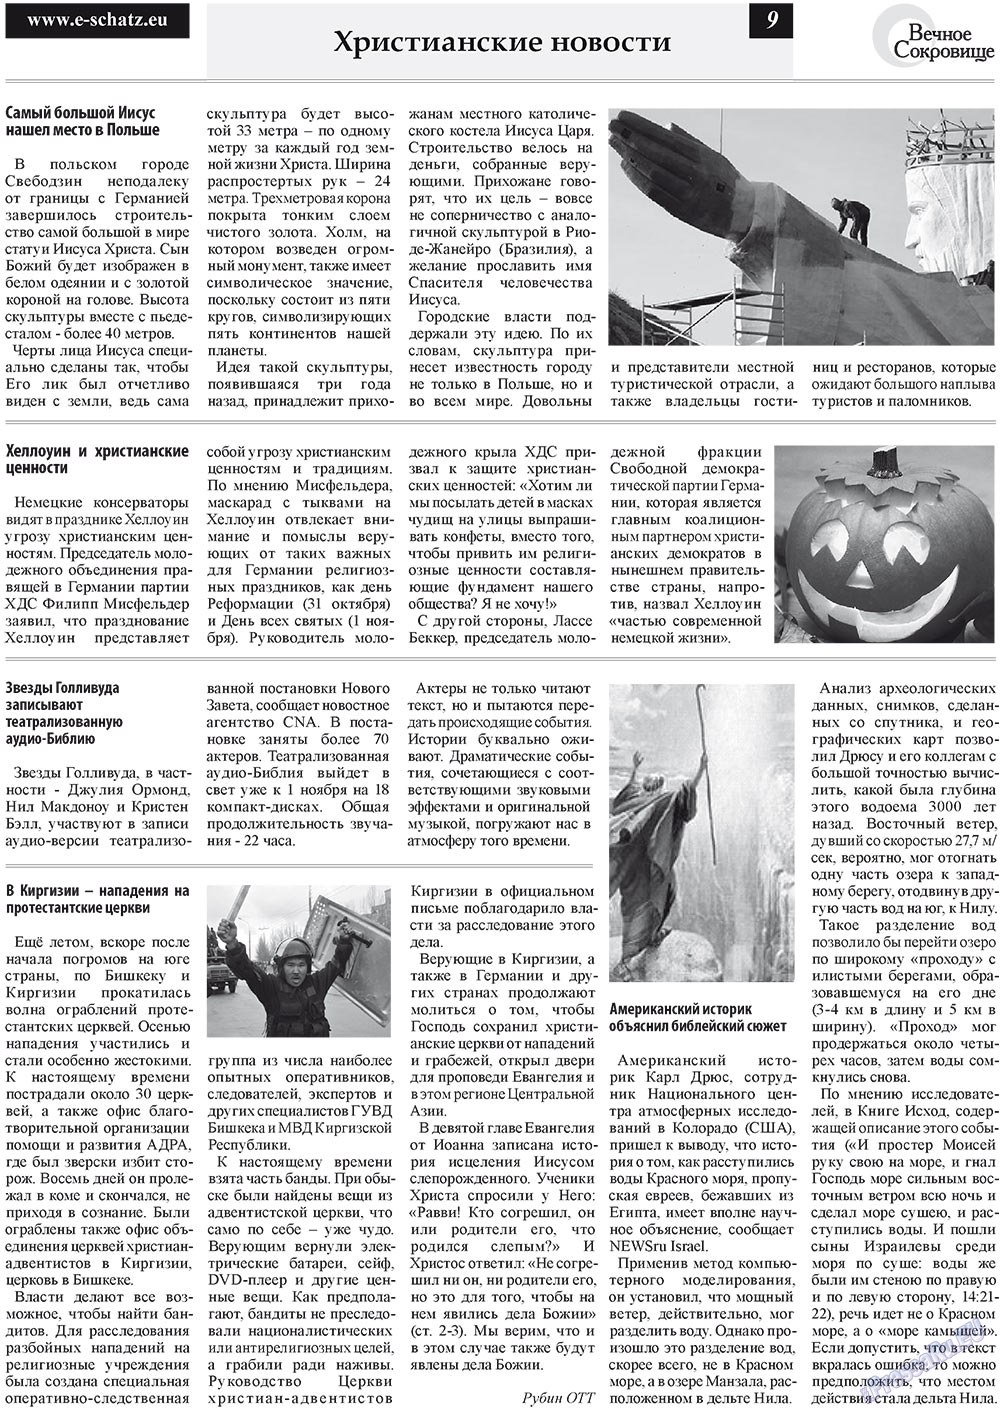 Вечное сокровище (газета). 2010 год, номер 4, стр. 9